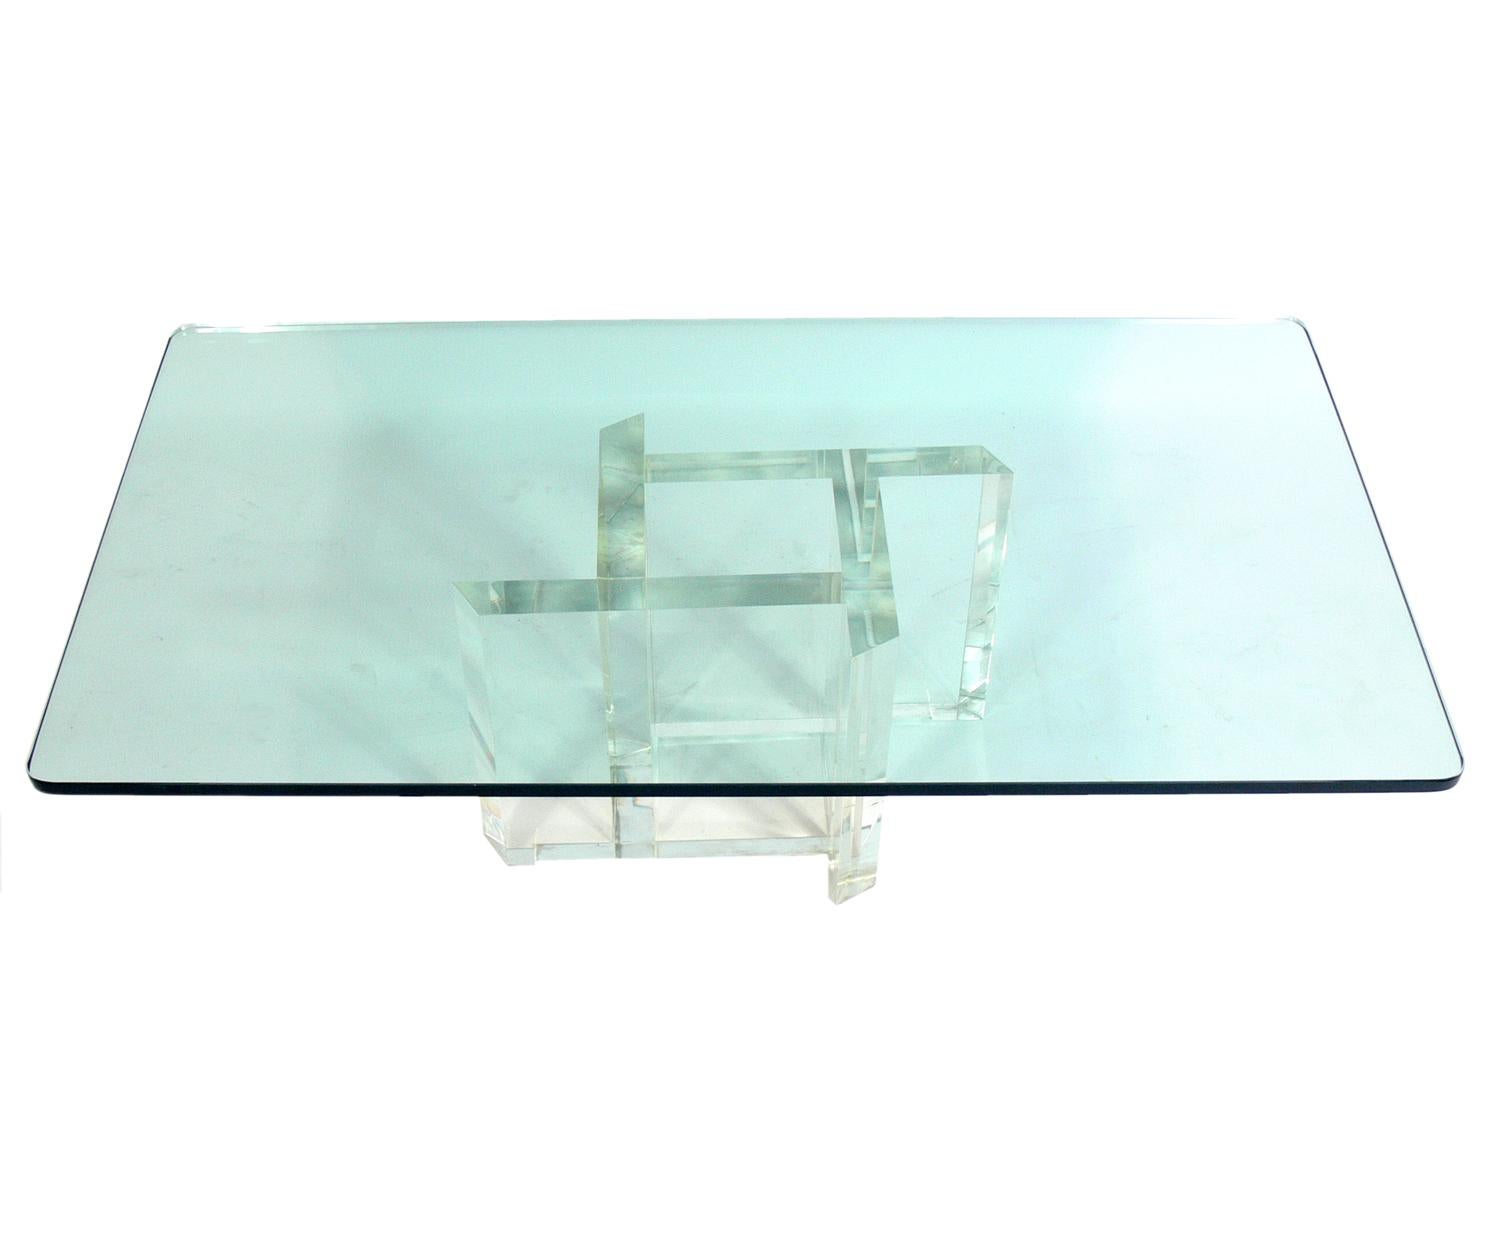 Les Prismatiques Table basse en verre et lucite, américaine, vers 1970. Signé Les Prismatiques sur la base. Il est bien construit avec une base massive en Lucite ou en acrylique et un épais plateau en verre rectangulaire.
  